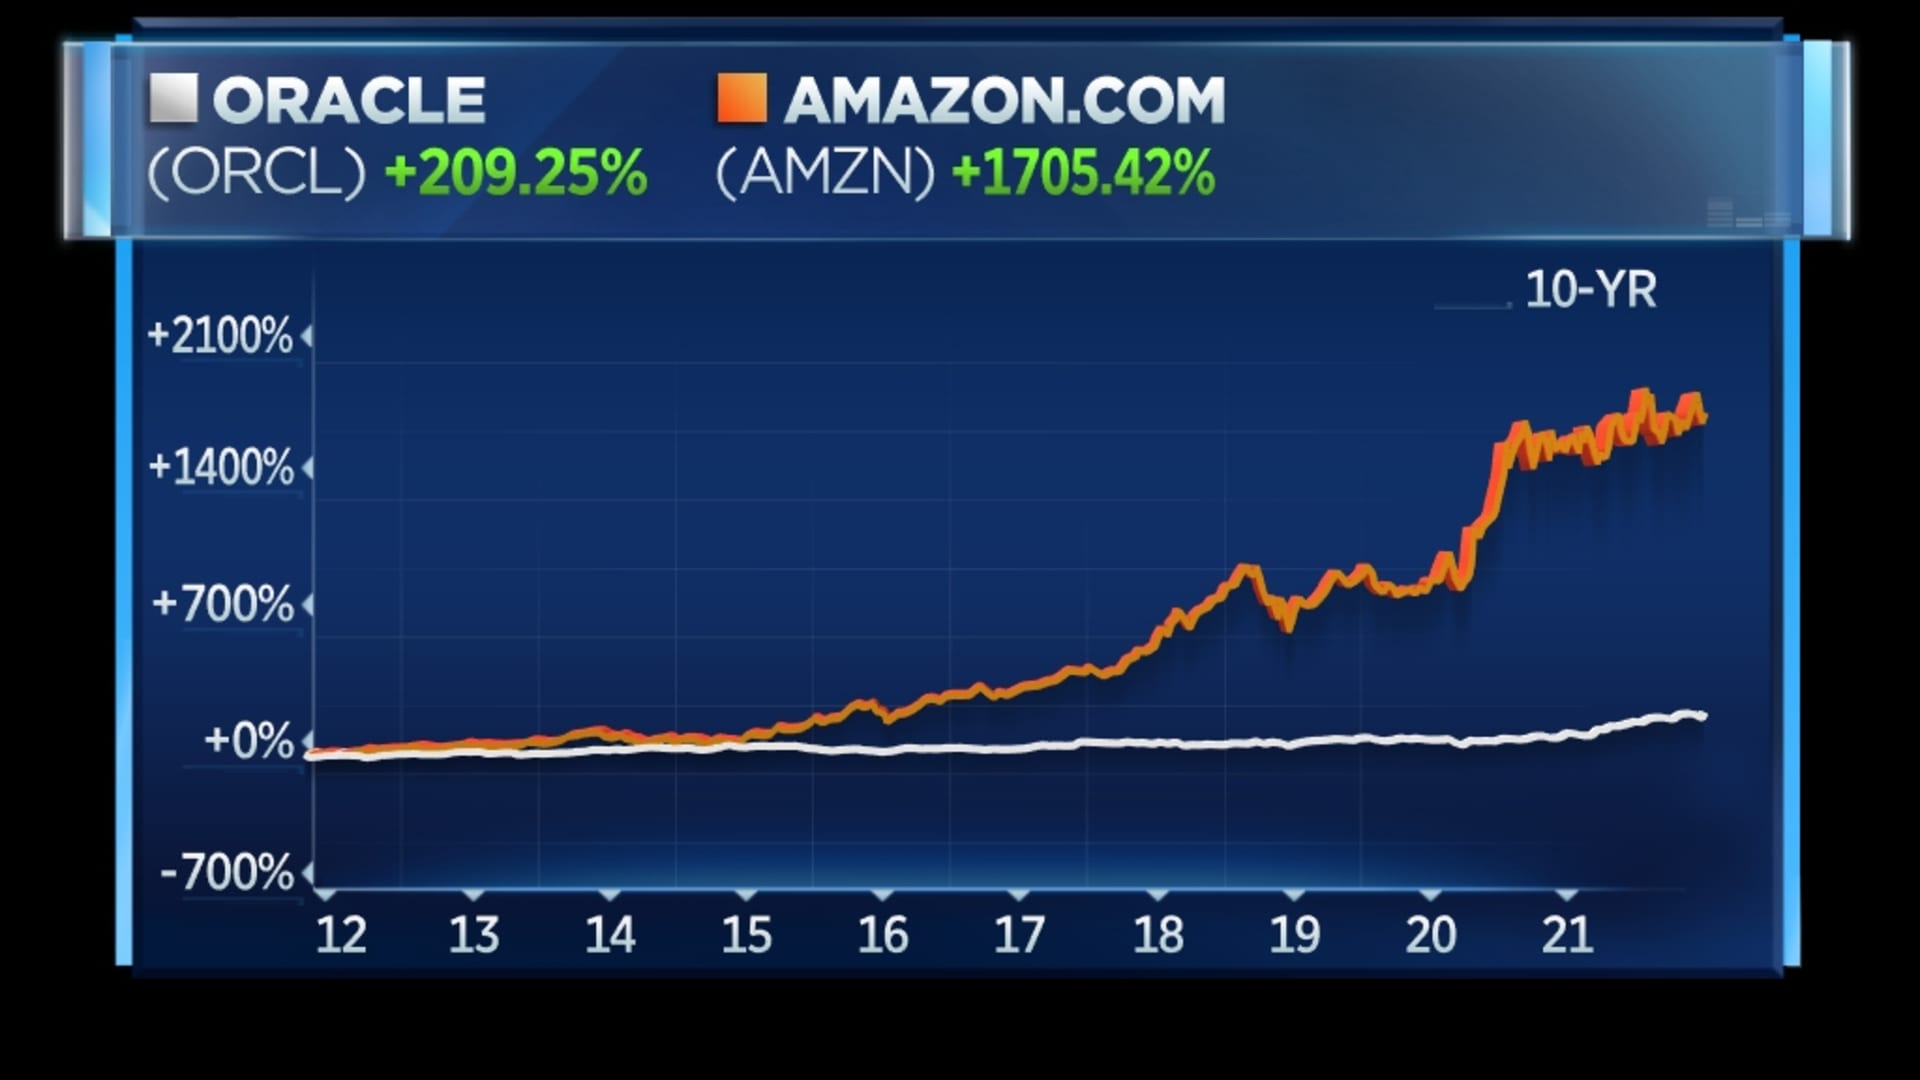 Oracle vs. Amazon